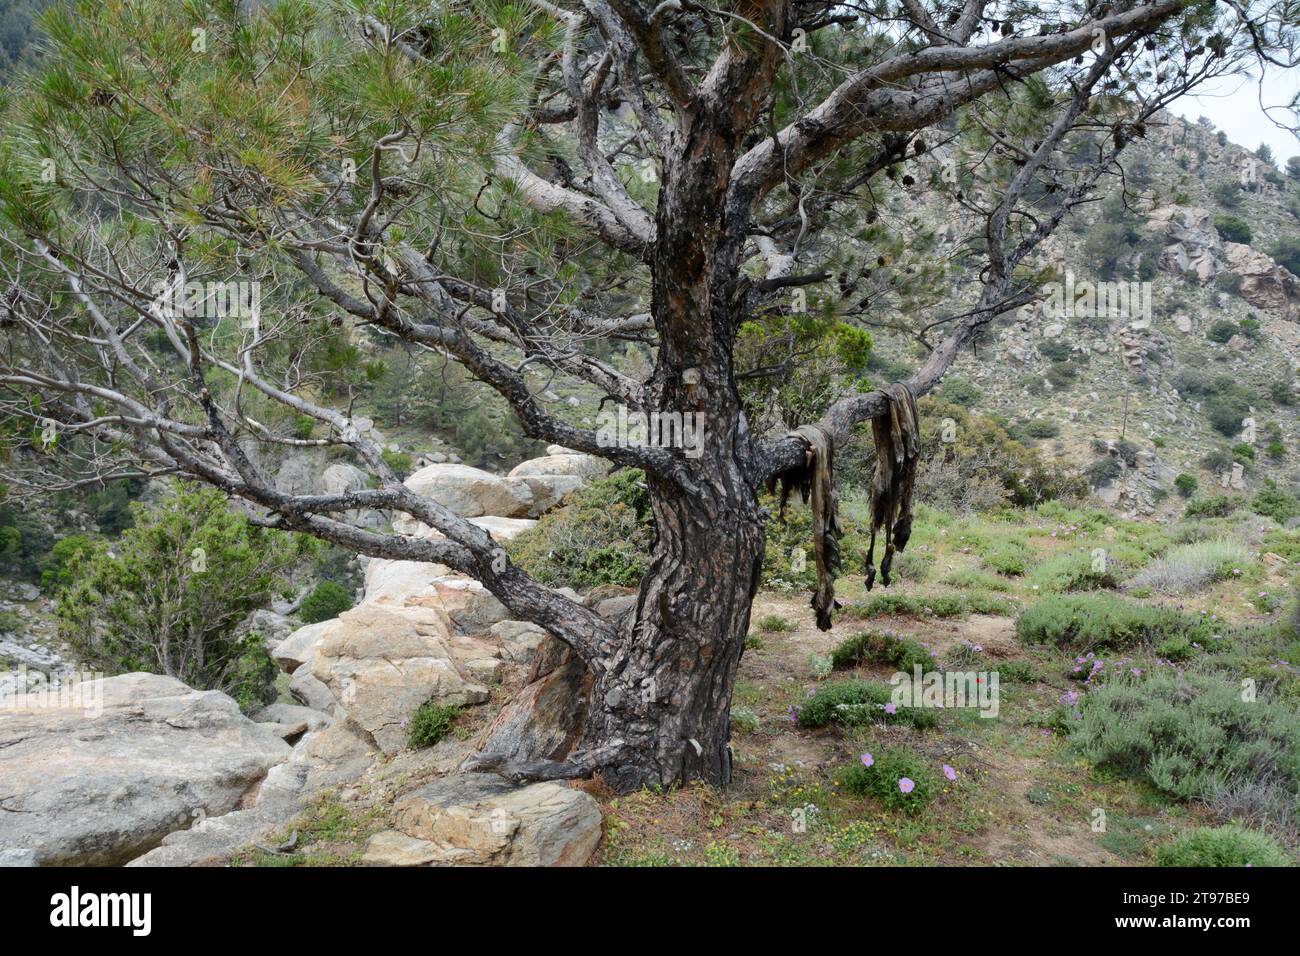 Ein Paar Ziegenfelle oder Ziegenfelle versteckt sich auf einem Baum in den Bergen oberhalb des Dorfes NAS auf der griechischen Insel Ikaria in Griechenland. Stockfoto